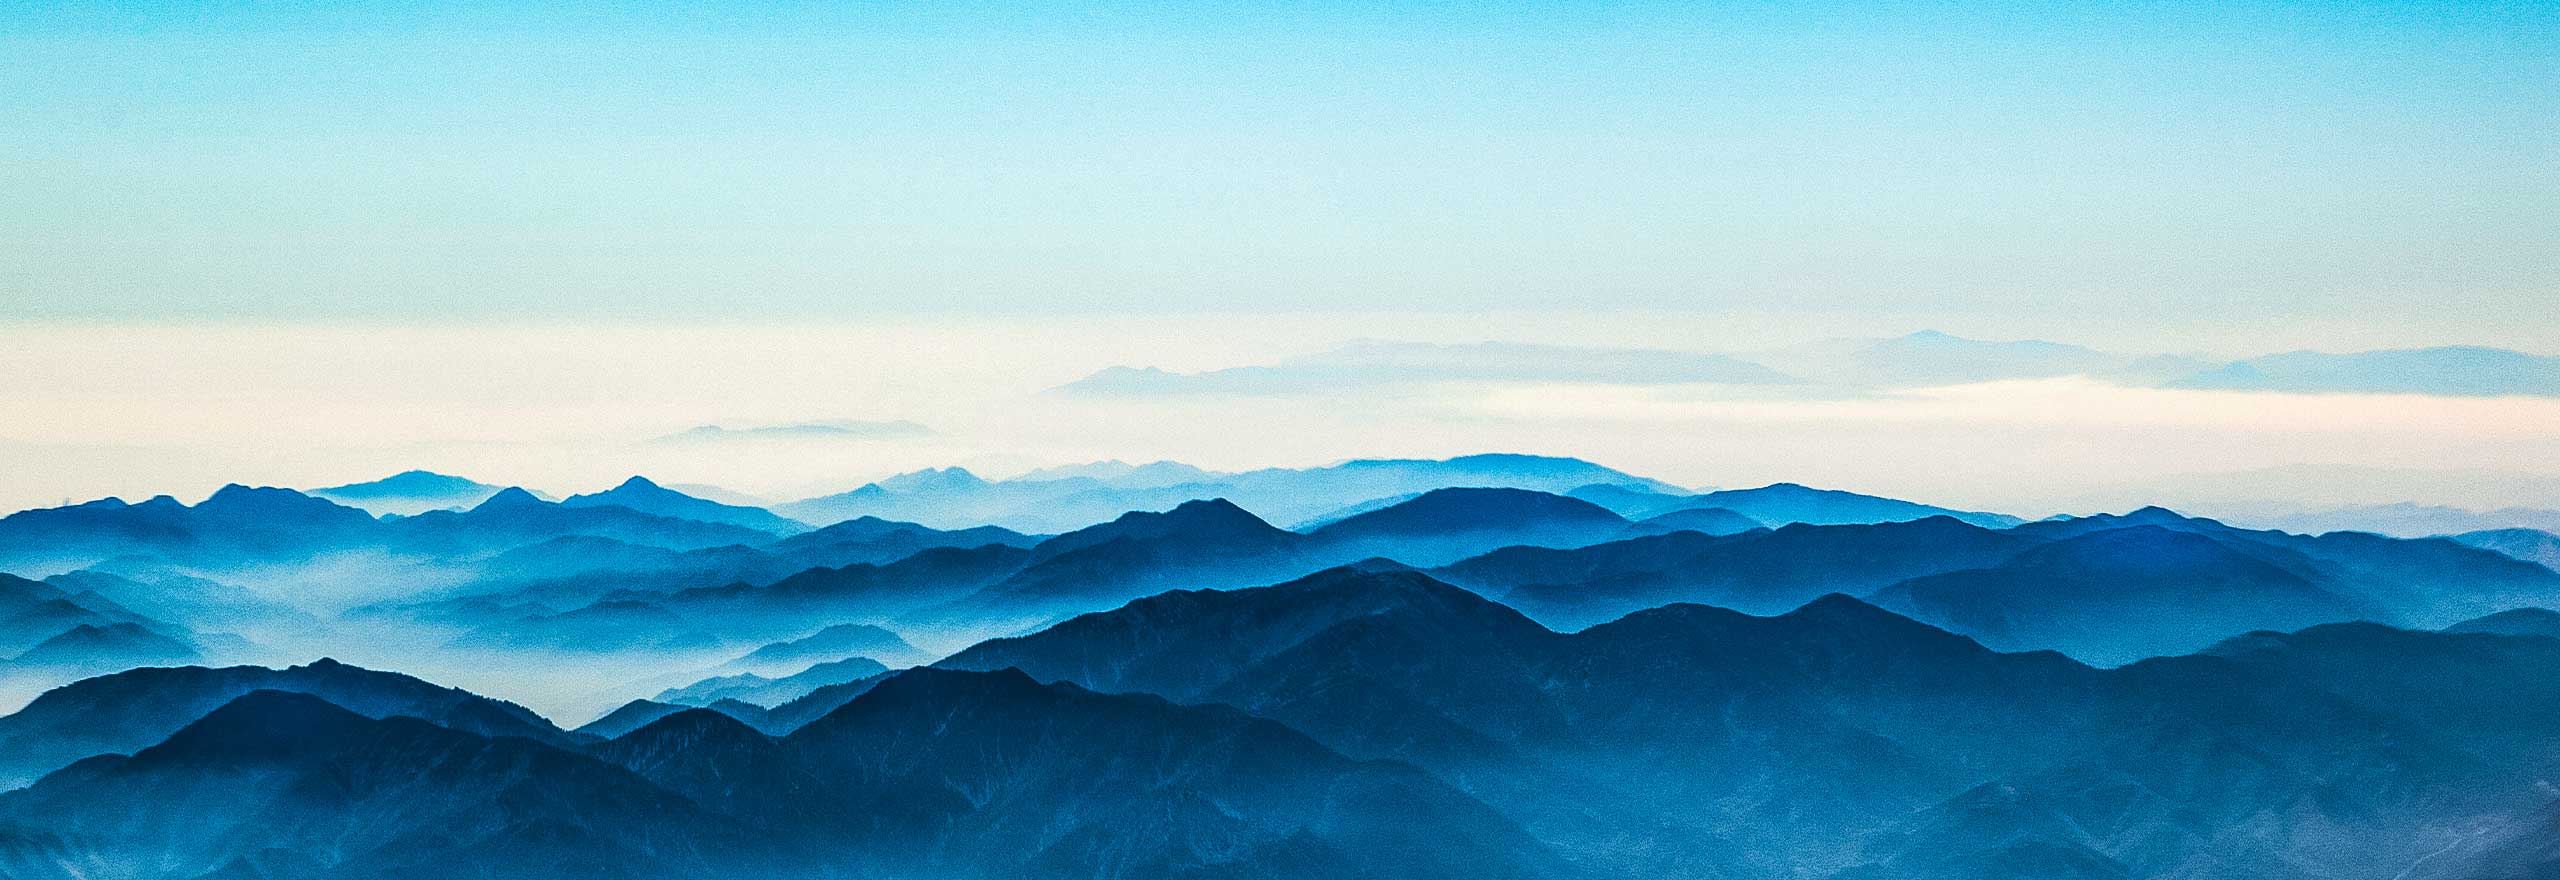 Vue aérienne de la montée du brouillard depuis un massif montagneux.